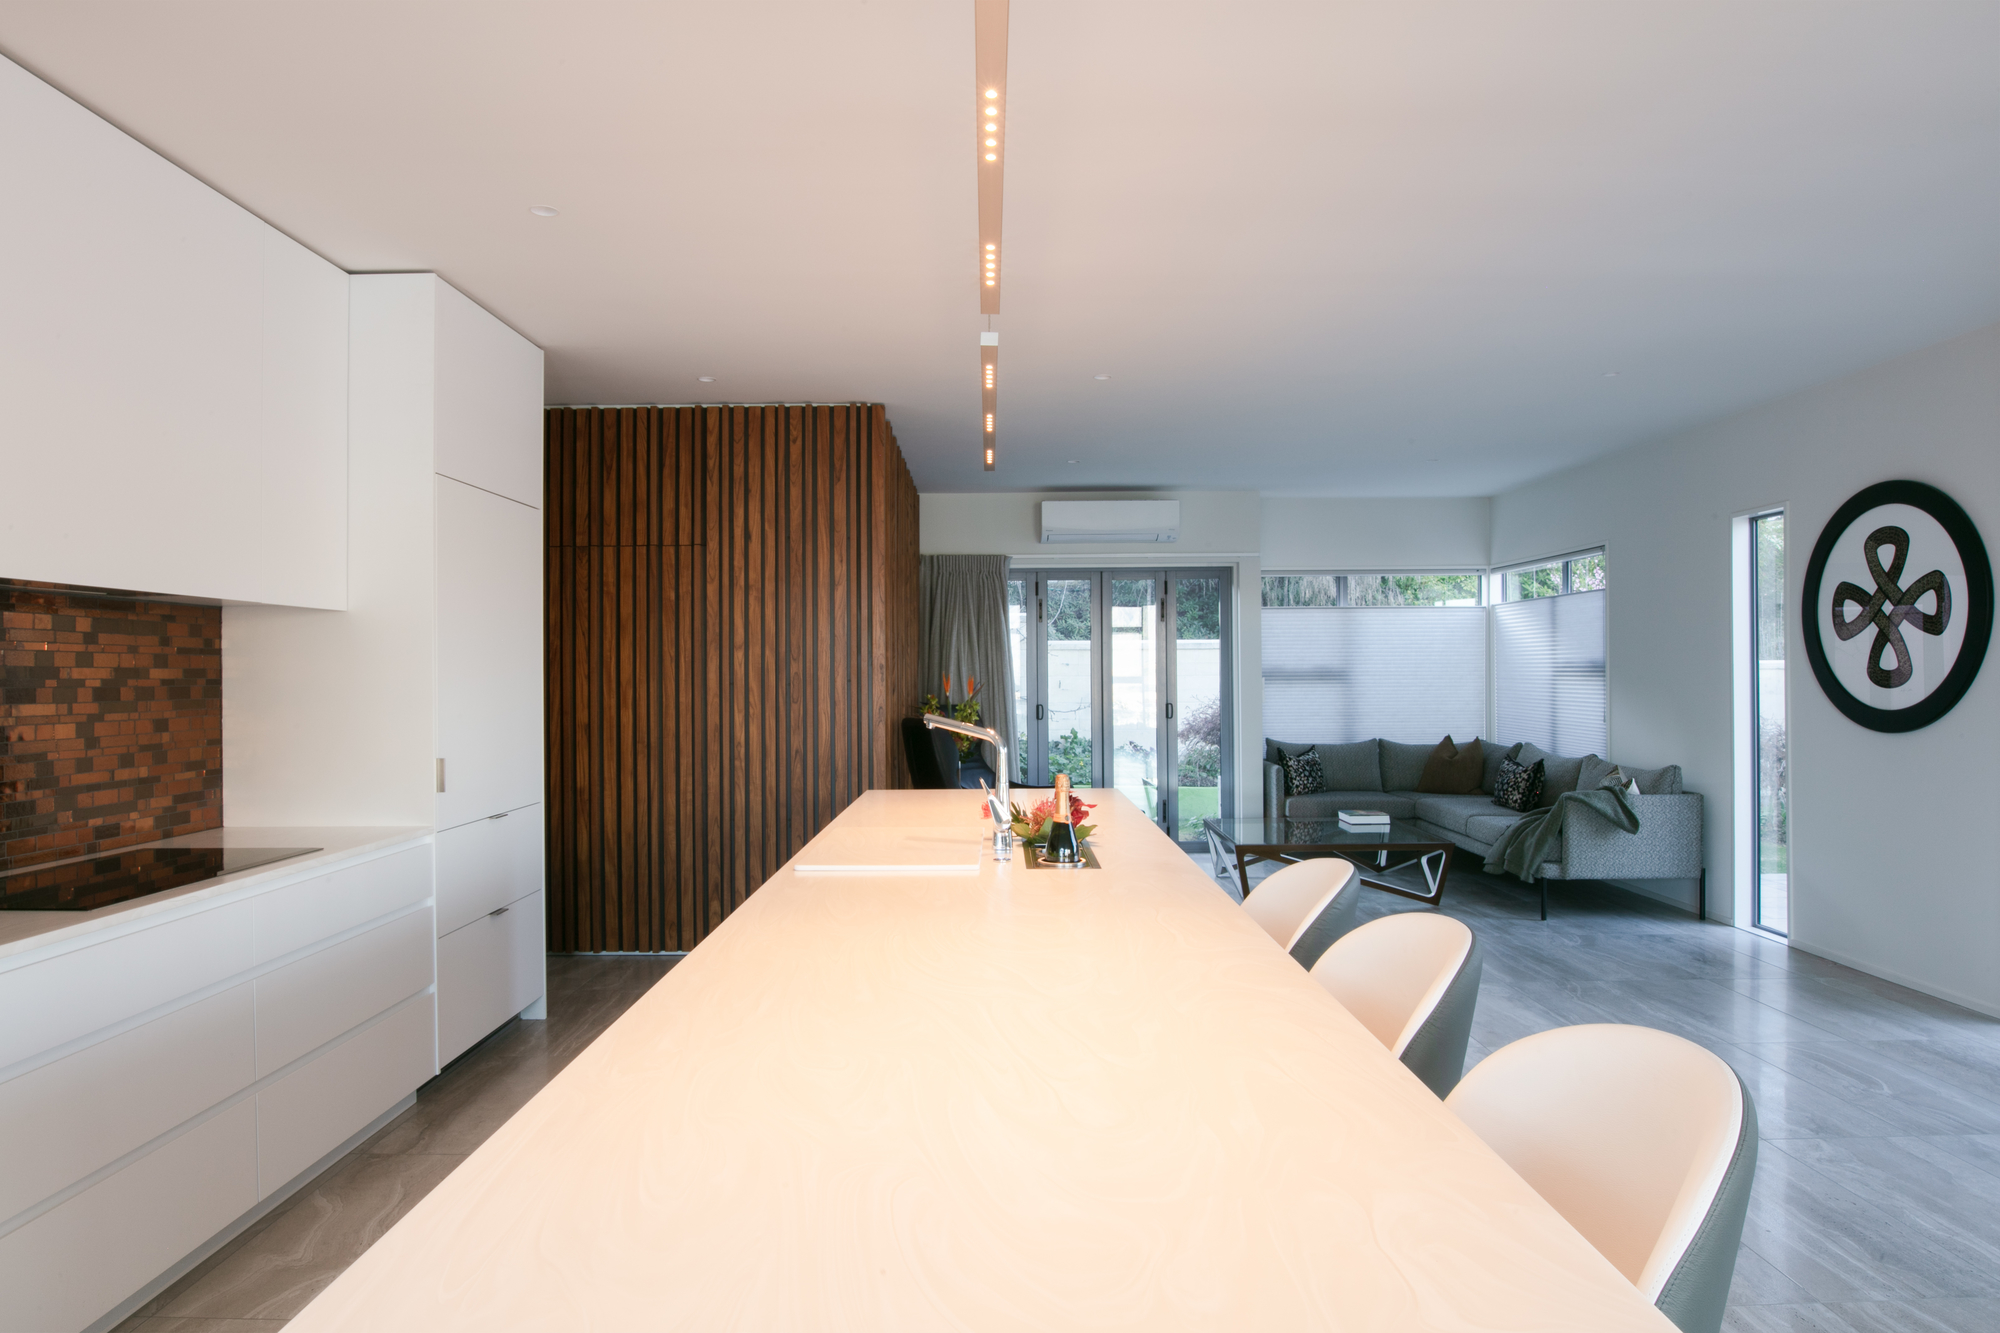 Hub Design interior designer services Queenstown